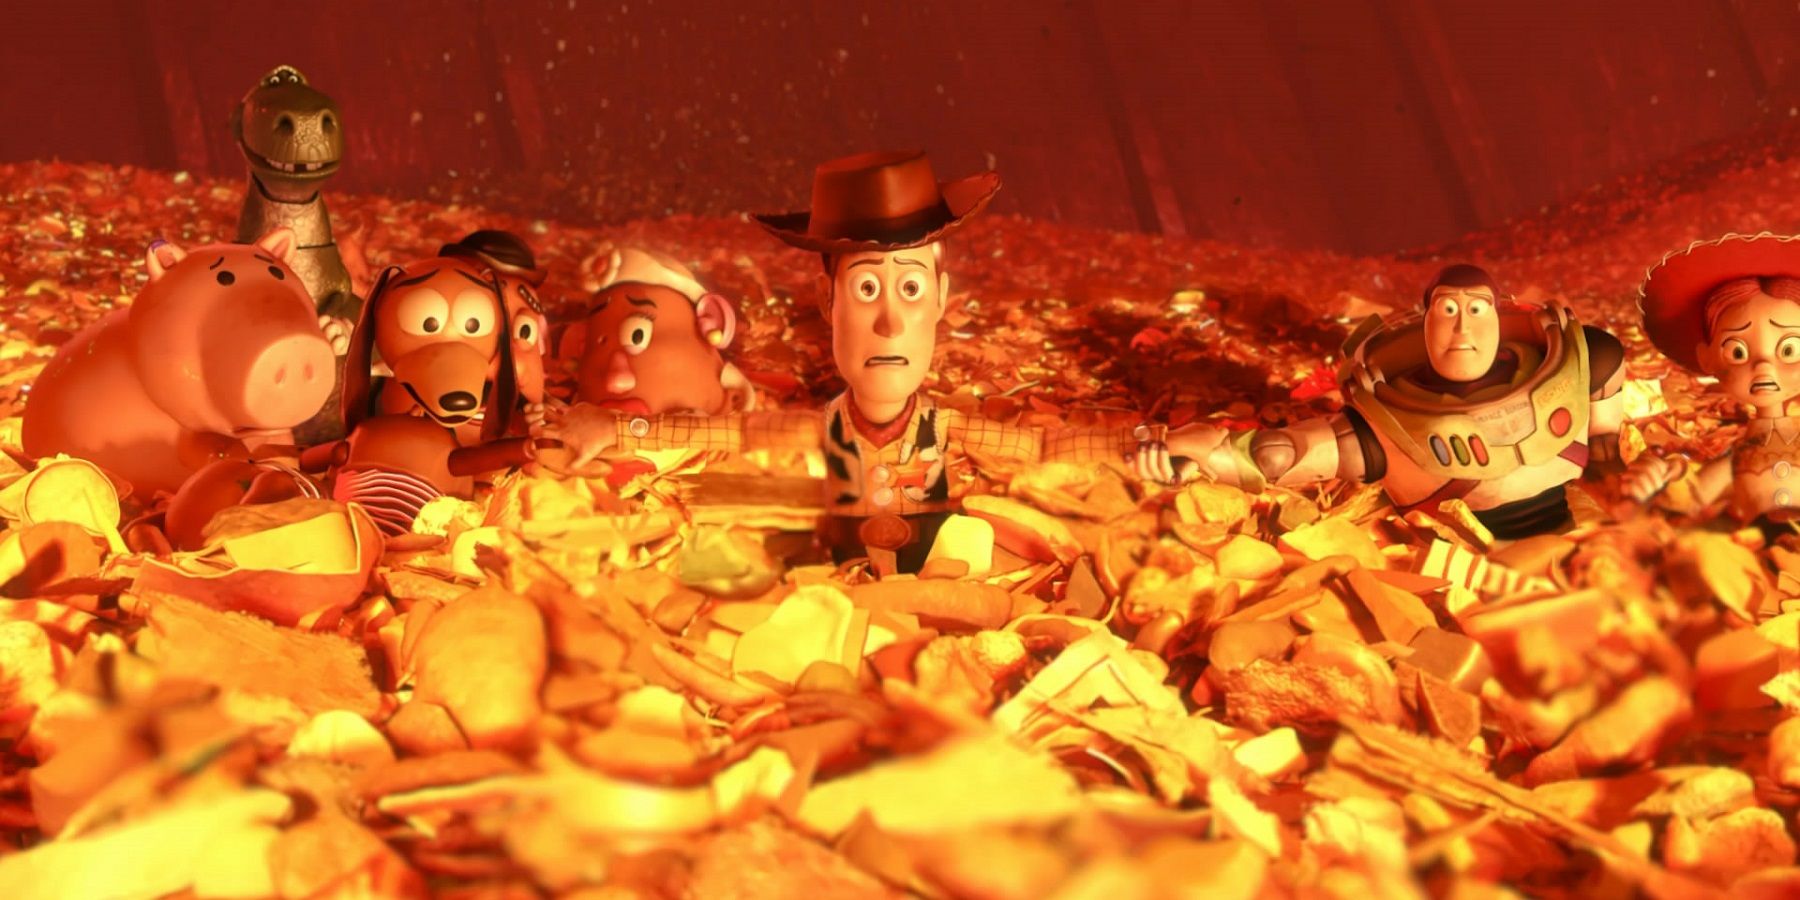 El final alternativo de Toy Story 3 habría traumatizado al público